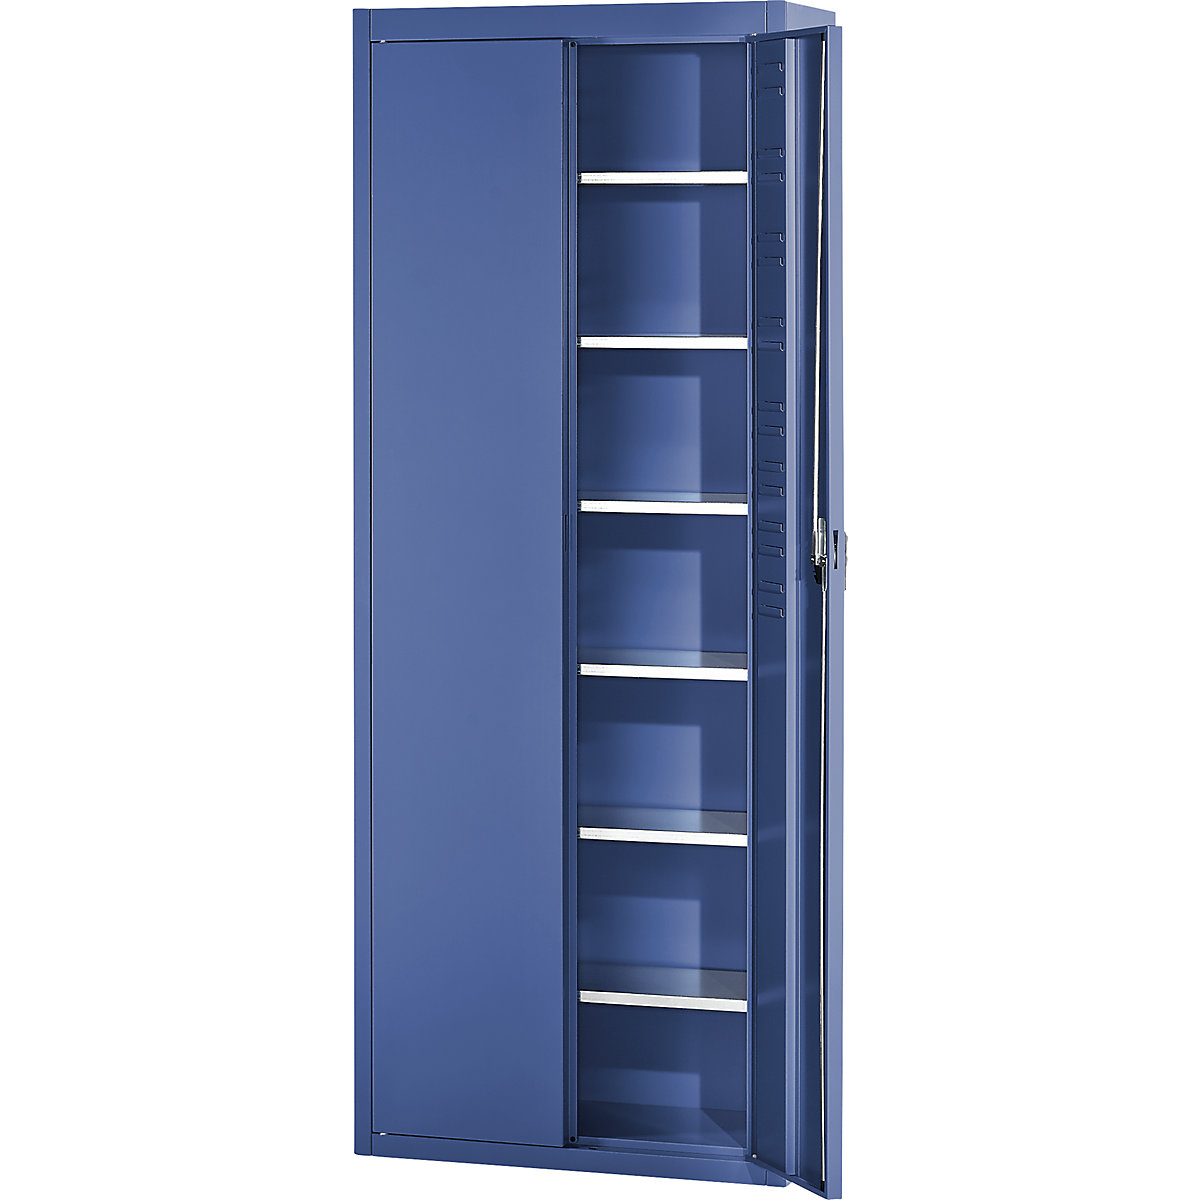 Skladišni ormar bez otvorenih skladišnih kutija – mauser, VxŠxD 2150 x 680 x 280 mm, u jednoj boji, u plavoj boji-6